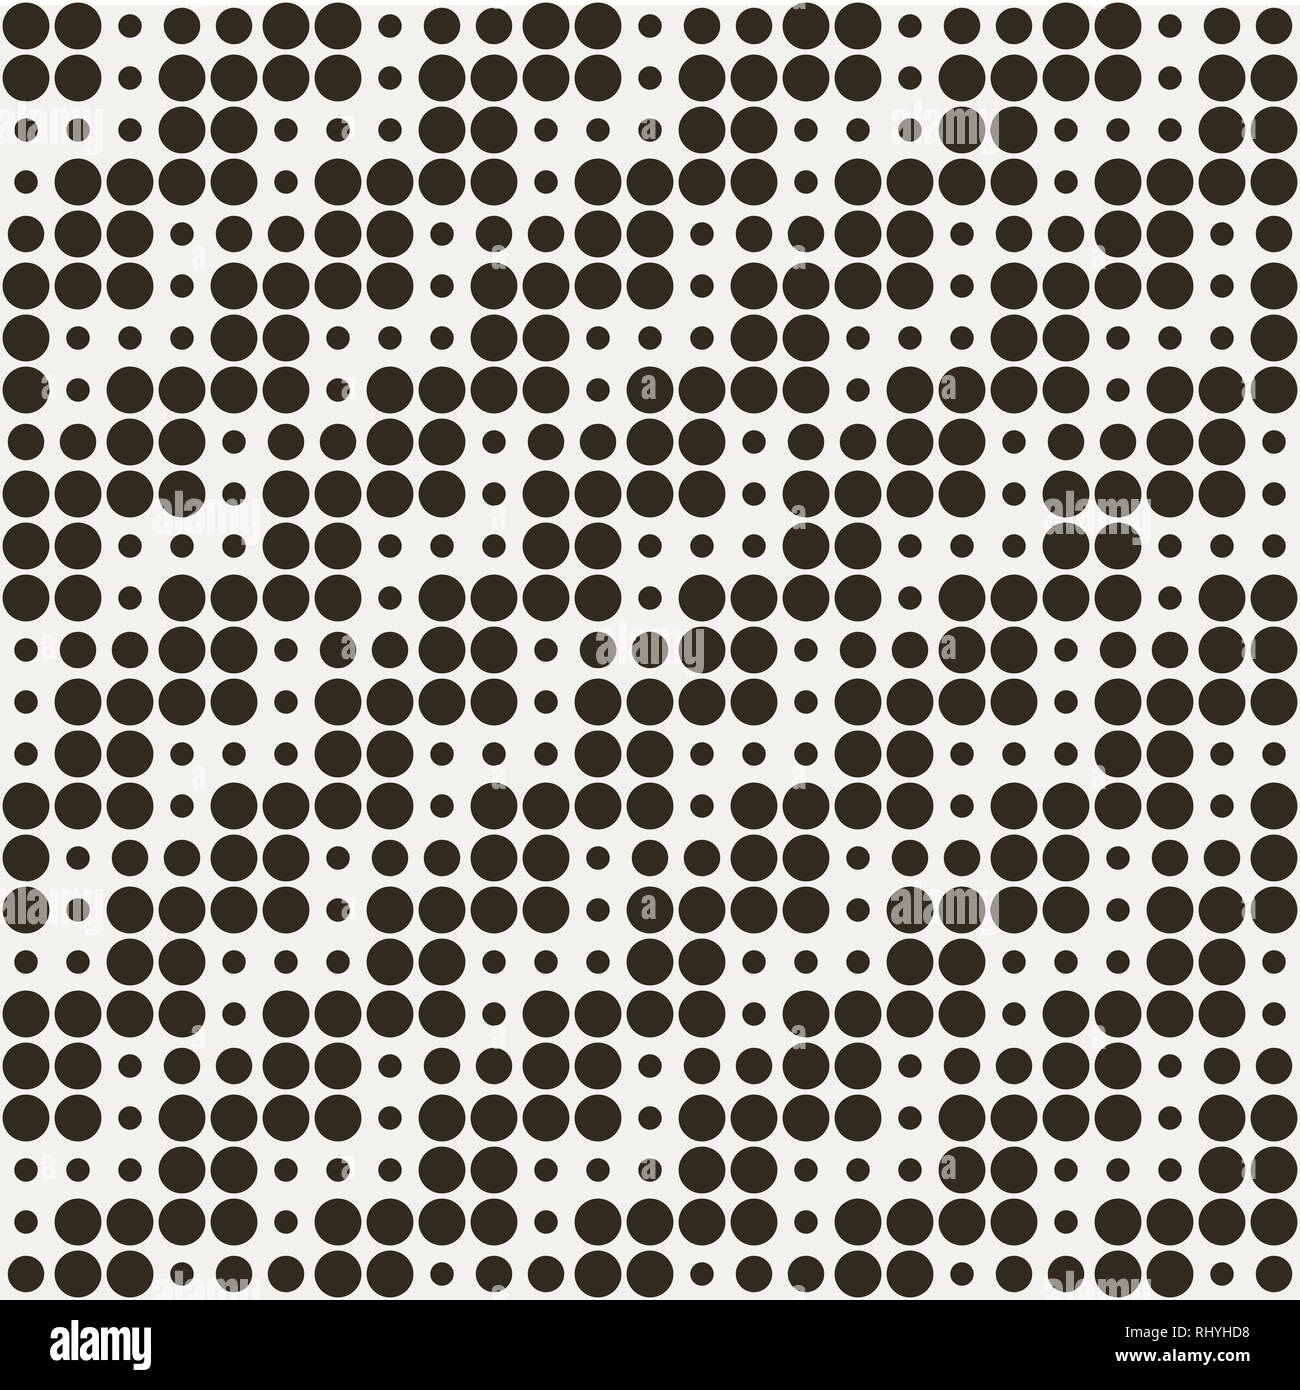 Geometric seamless optical dotted pattern Stock Photo